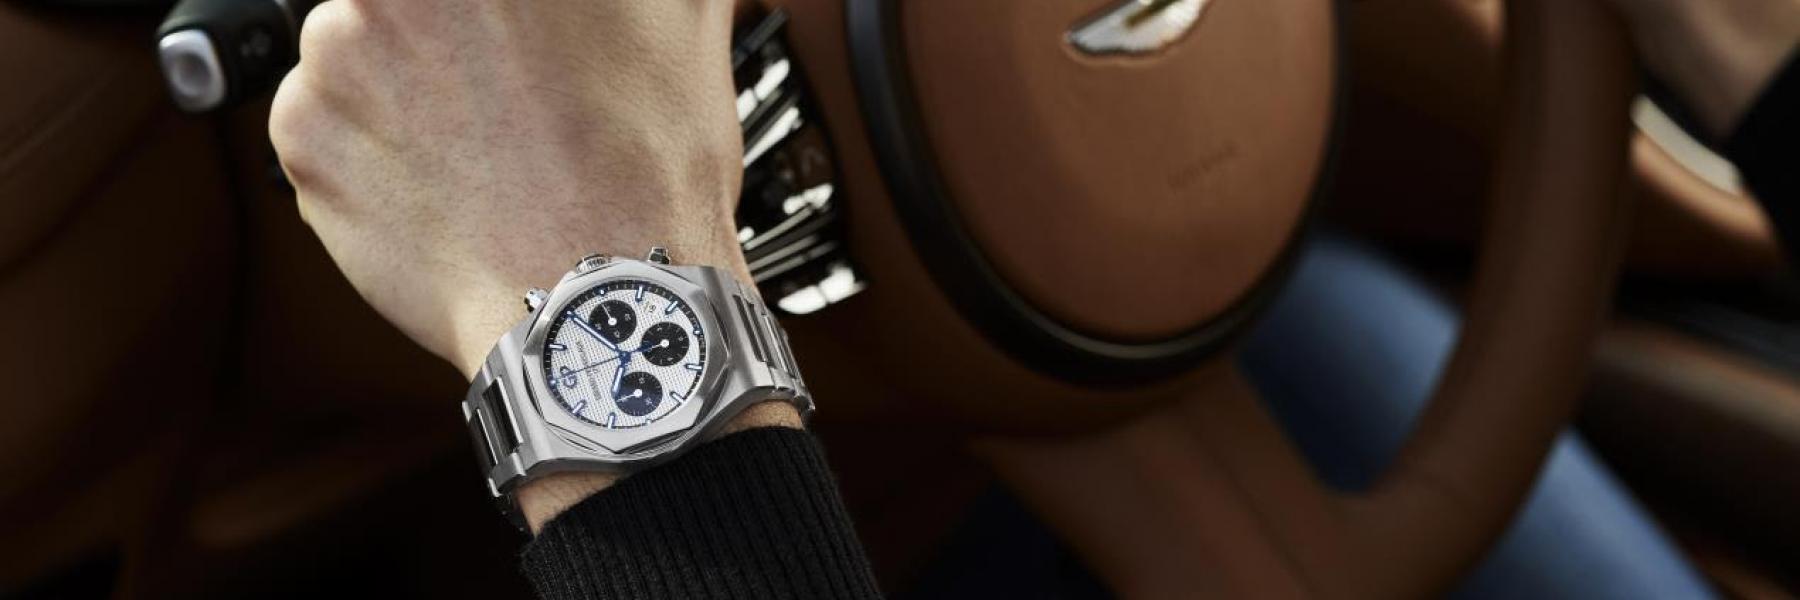 تم إعلان دار Girard-Perregaux كشريك الساعة الرسمية لشركة Aston Martin